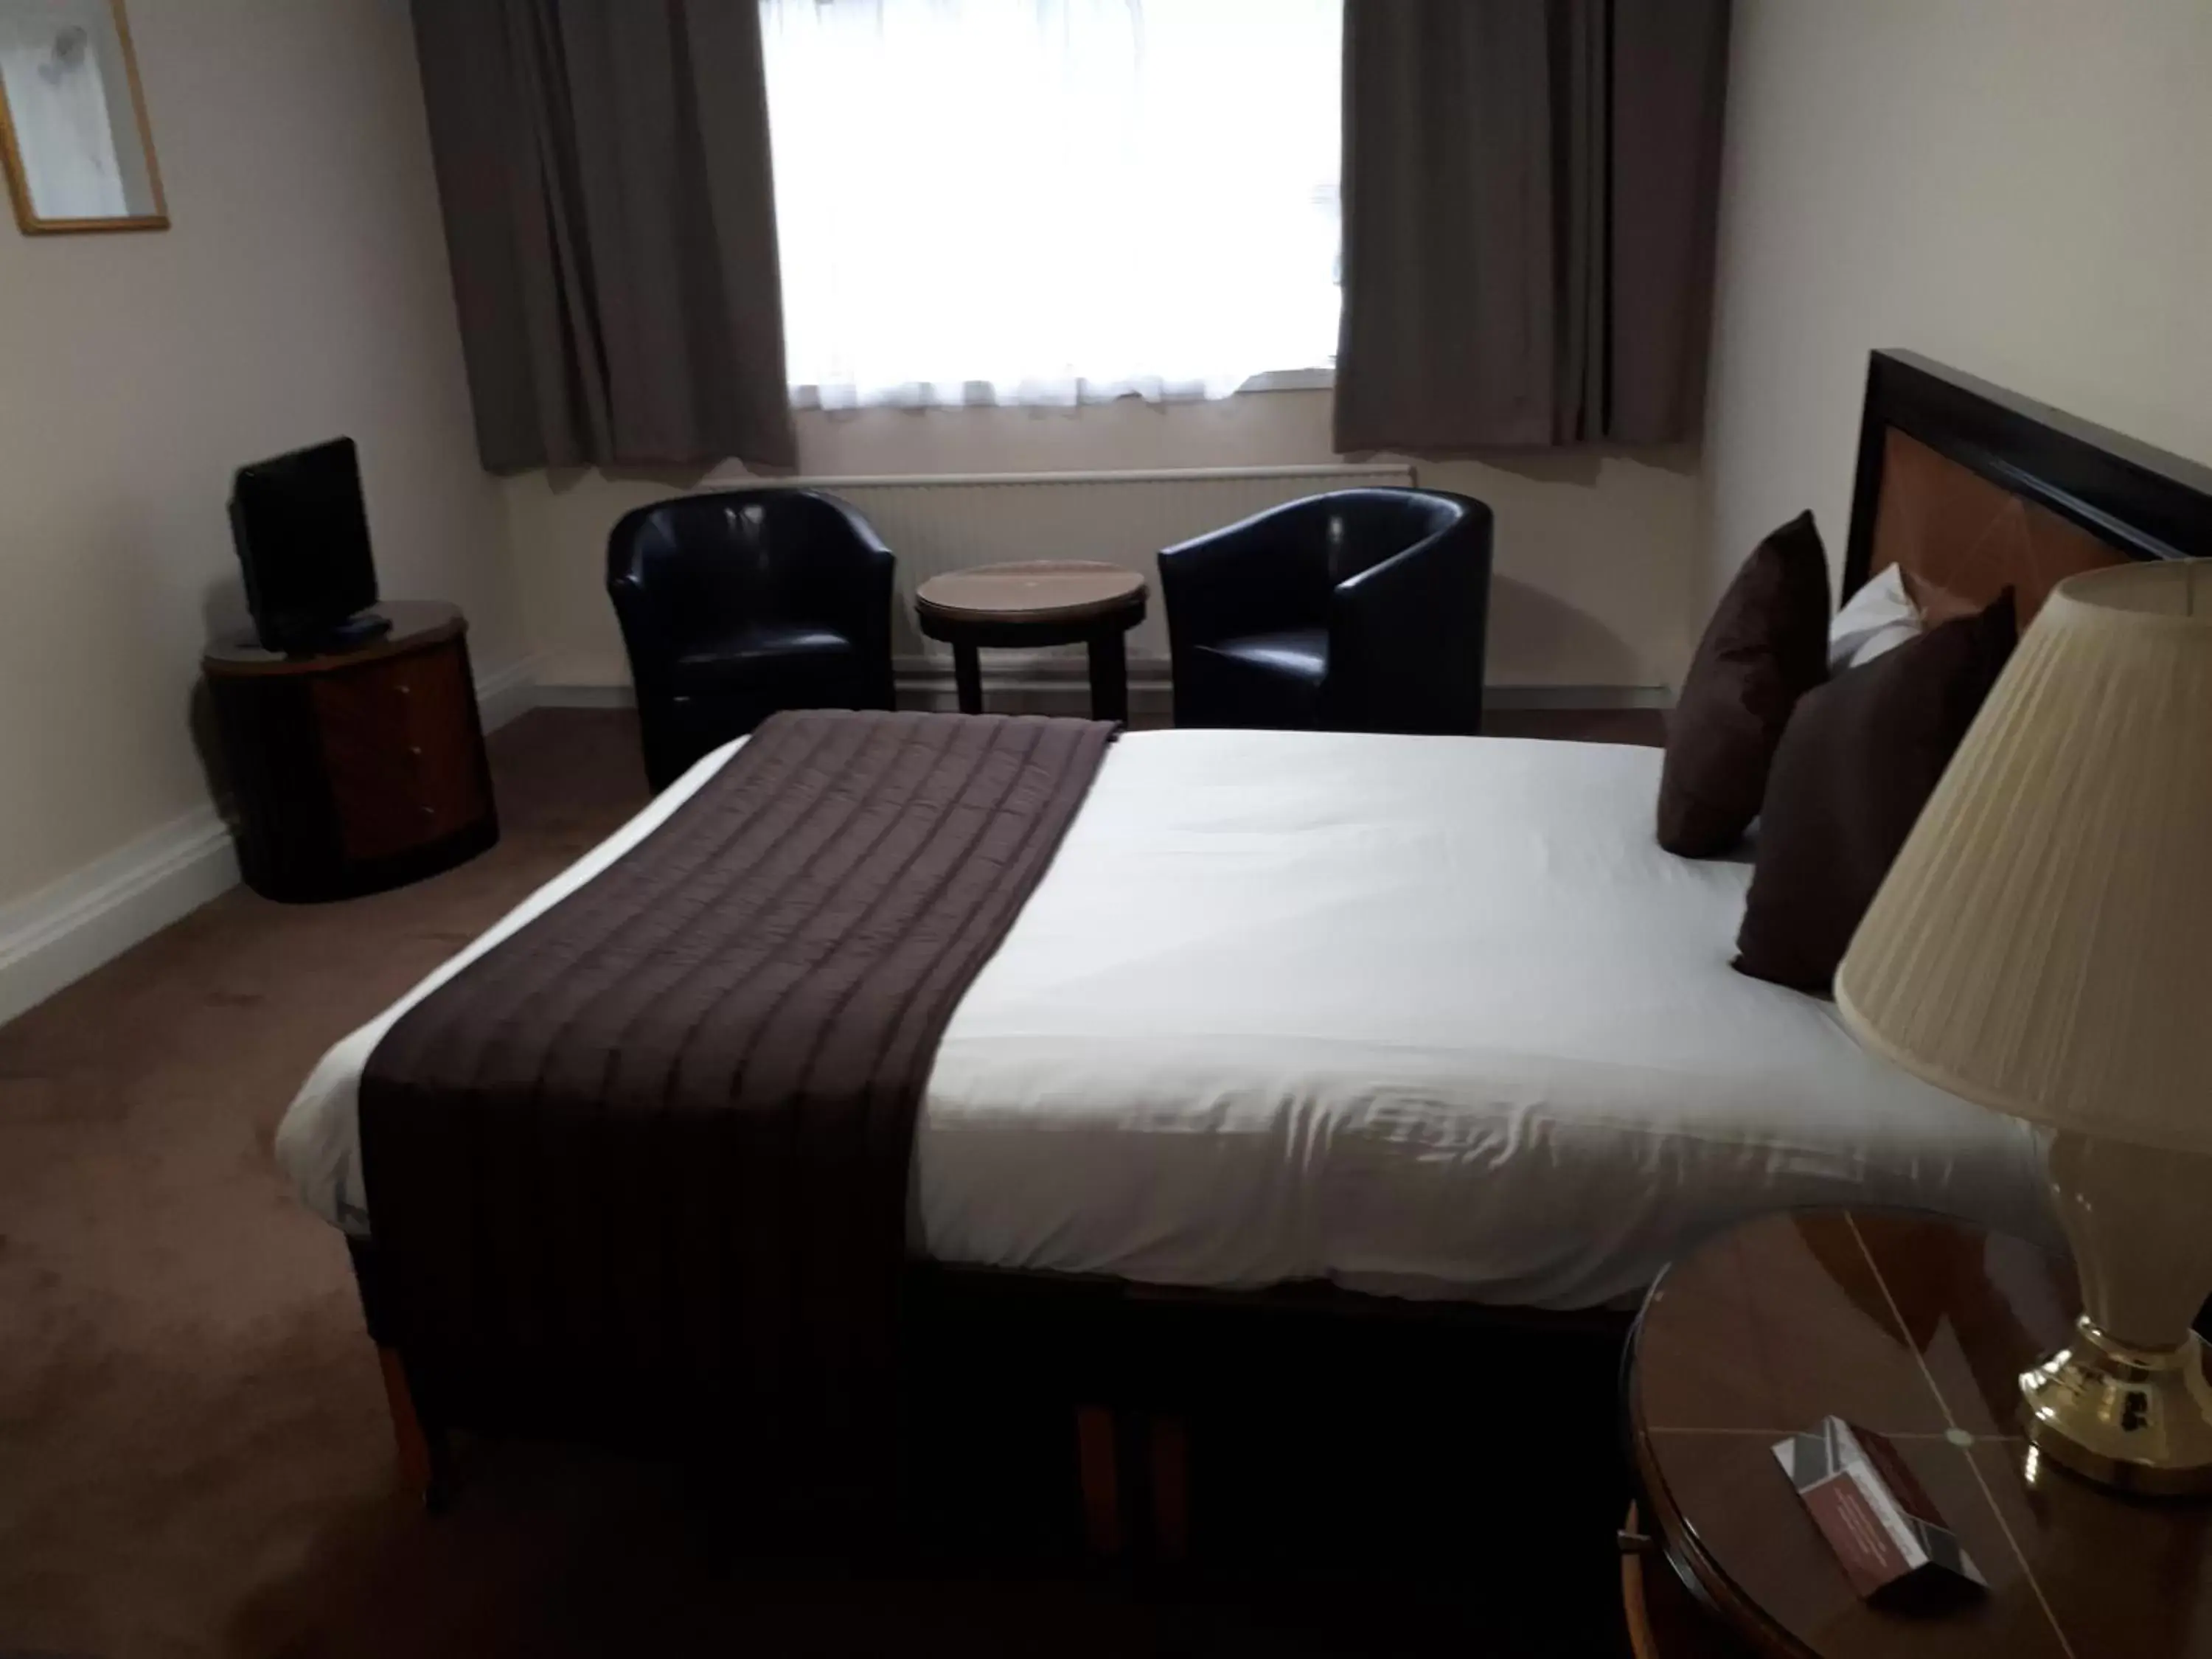 Bed in Britannia Hotel Aberdeen